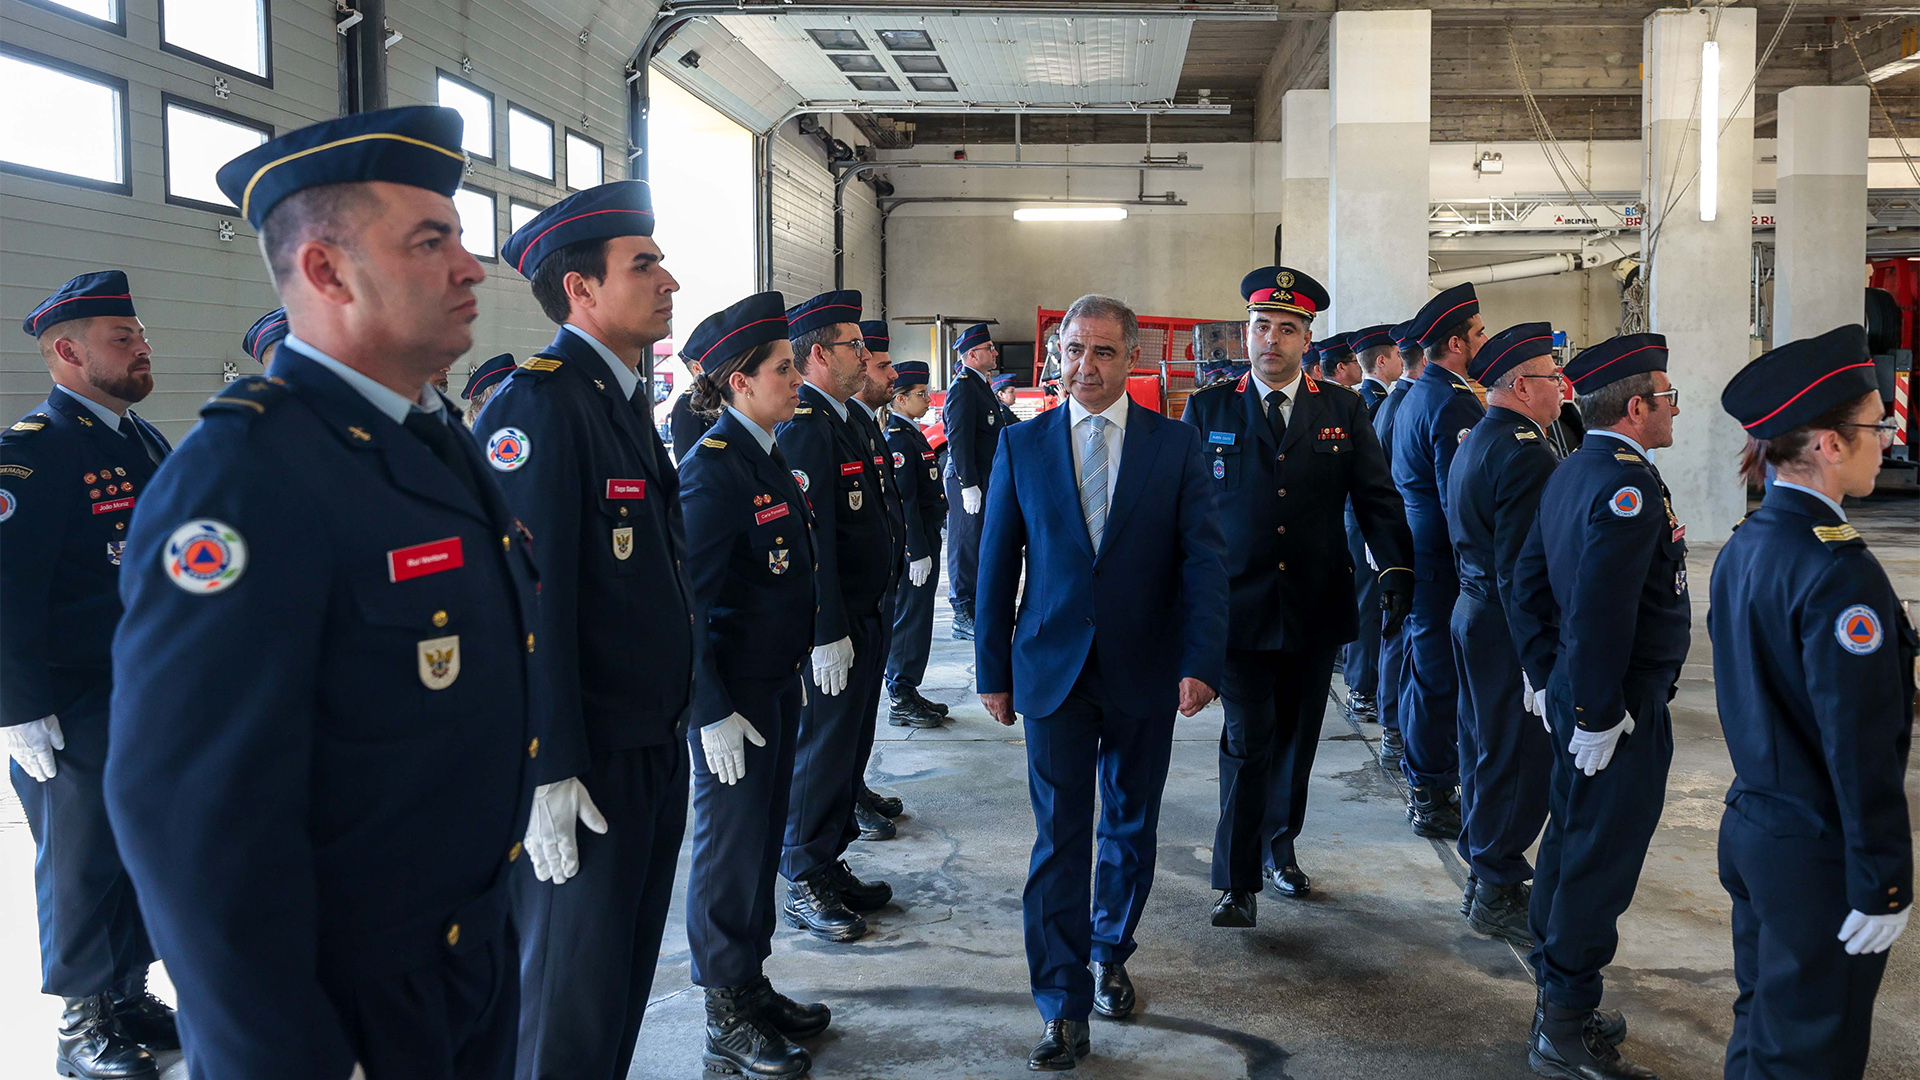 José Manuel Bolieiro prestou homenagem a bombeiros envolvidos no combate ao incêndio no HDES